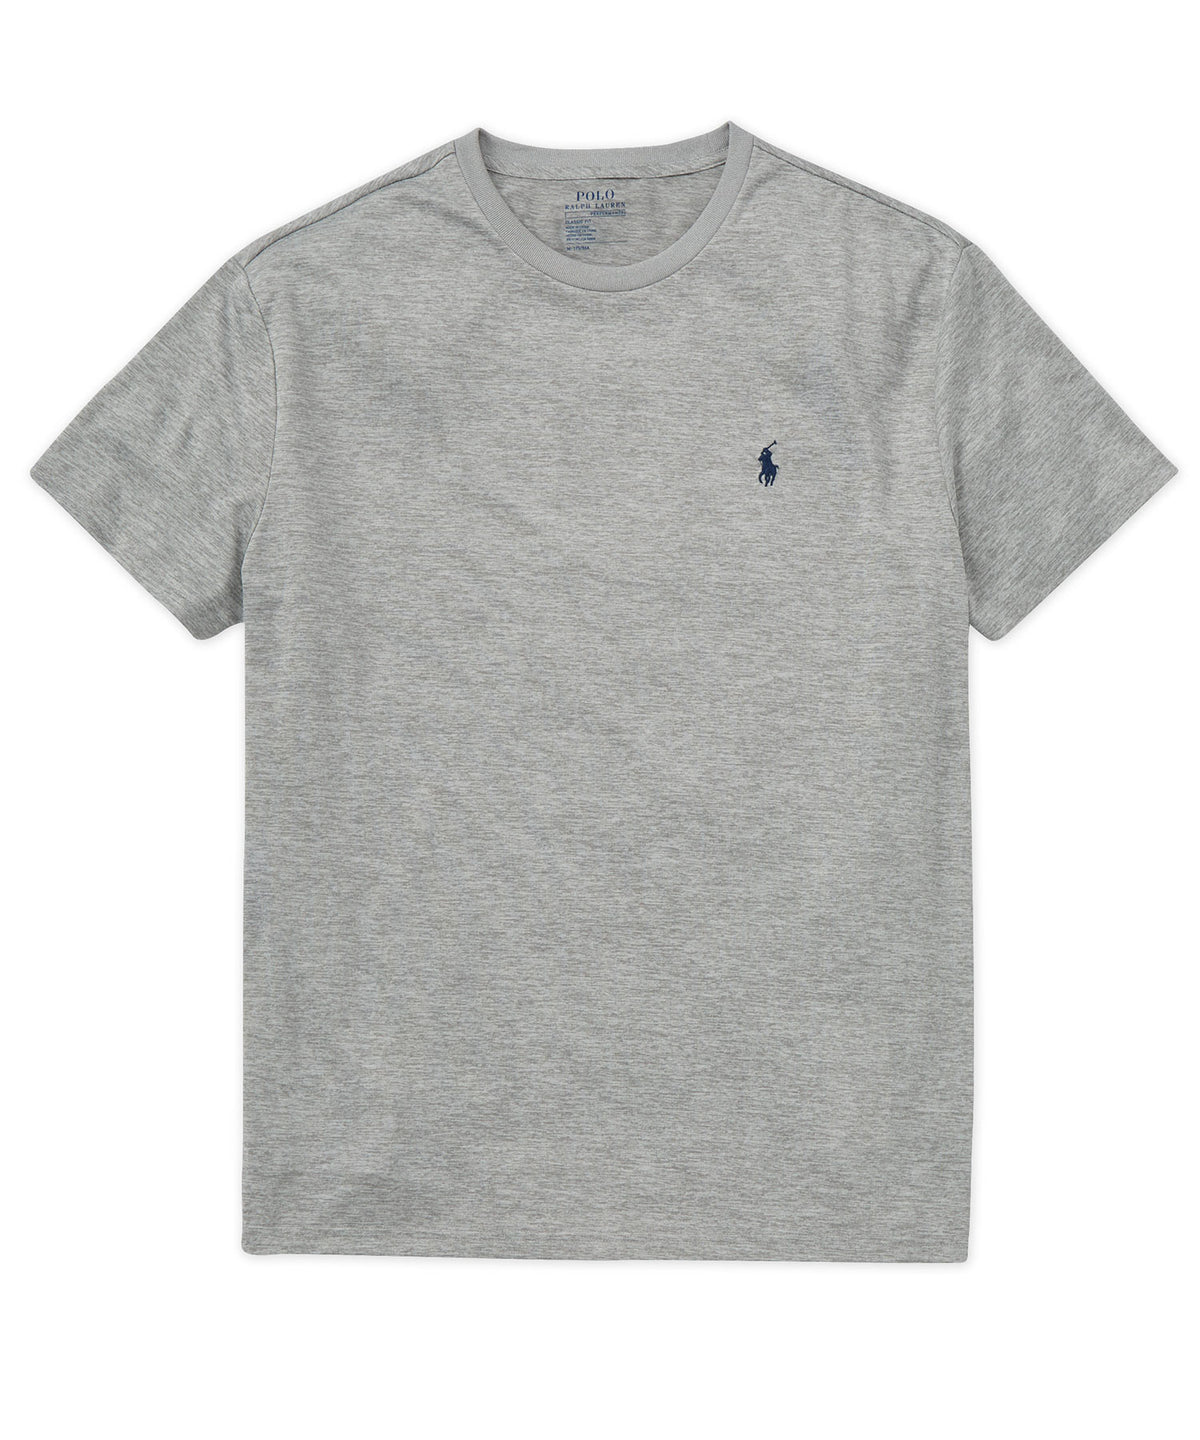 Polo Ralph Lauren Short Sleeve Performance T-Shirt, Men's Big & Tall